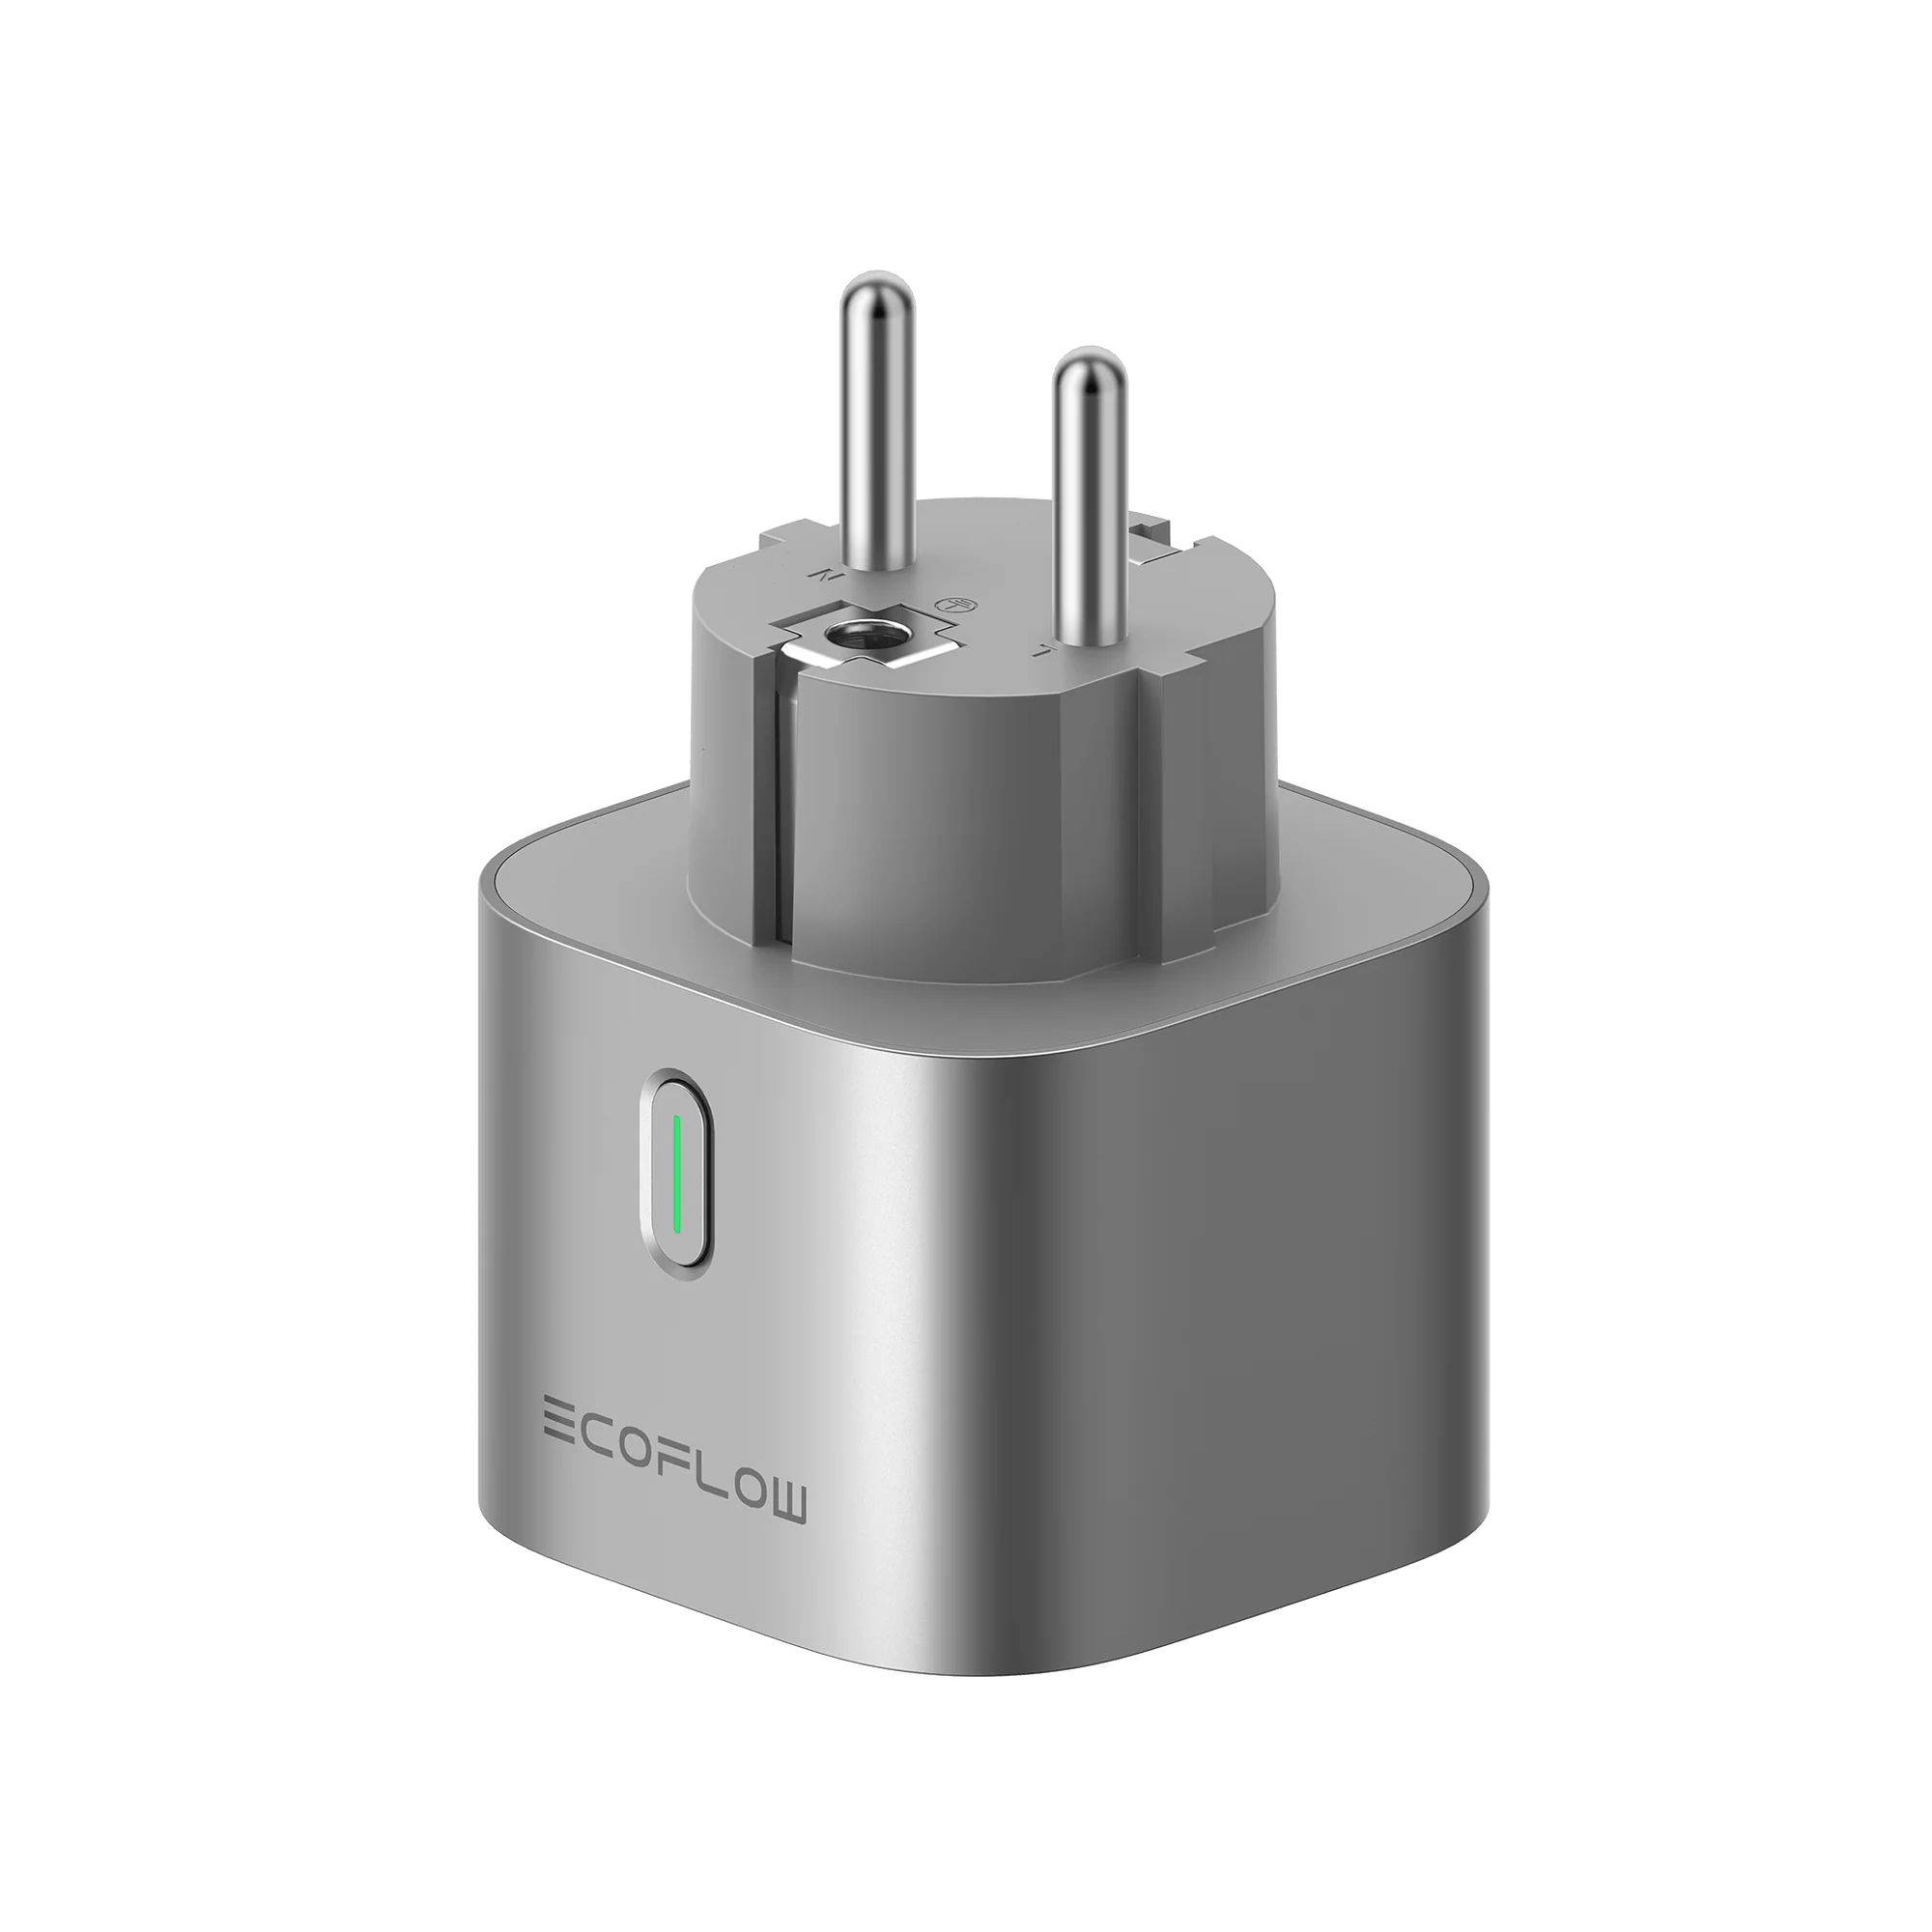 Prise intelligente (SmartPlug) EcoFlow moderne et compacte, contrôlable via Wi-Fi pour une gestion d'énergie efficace à domicile.